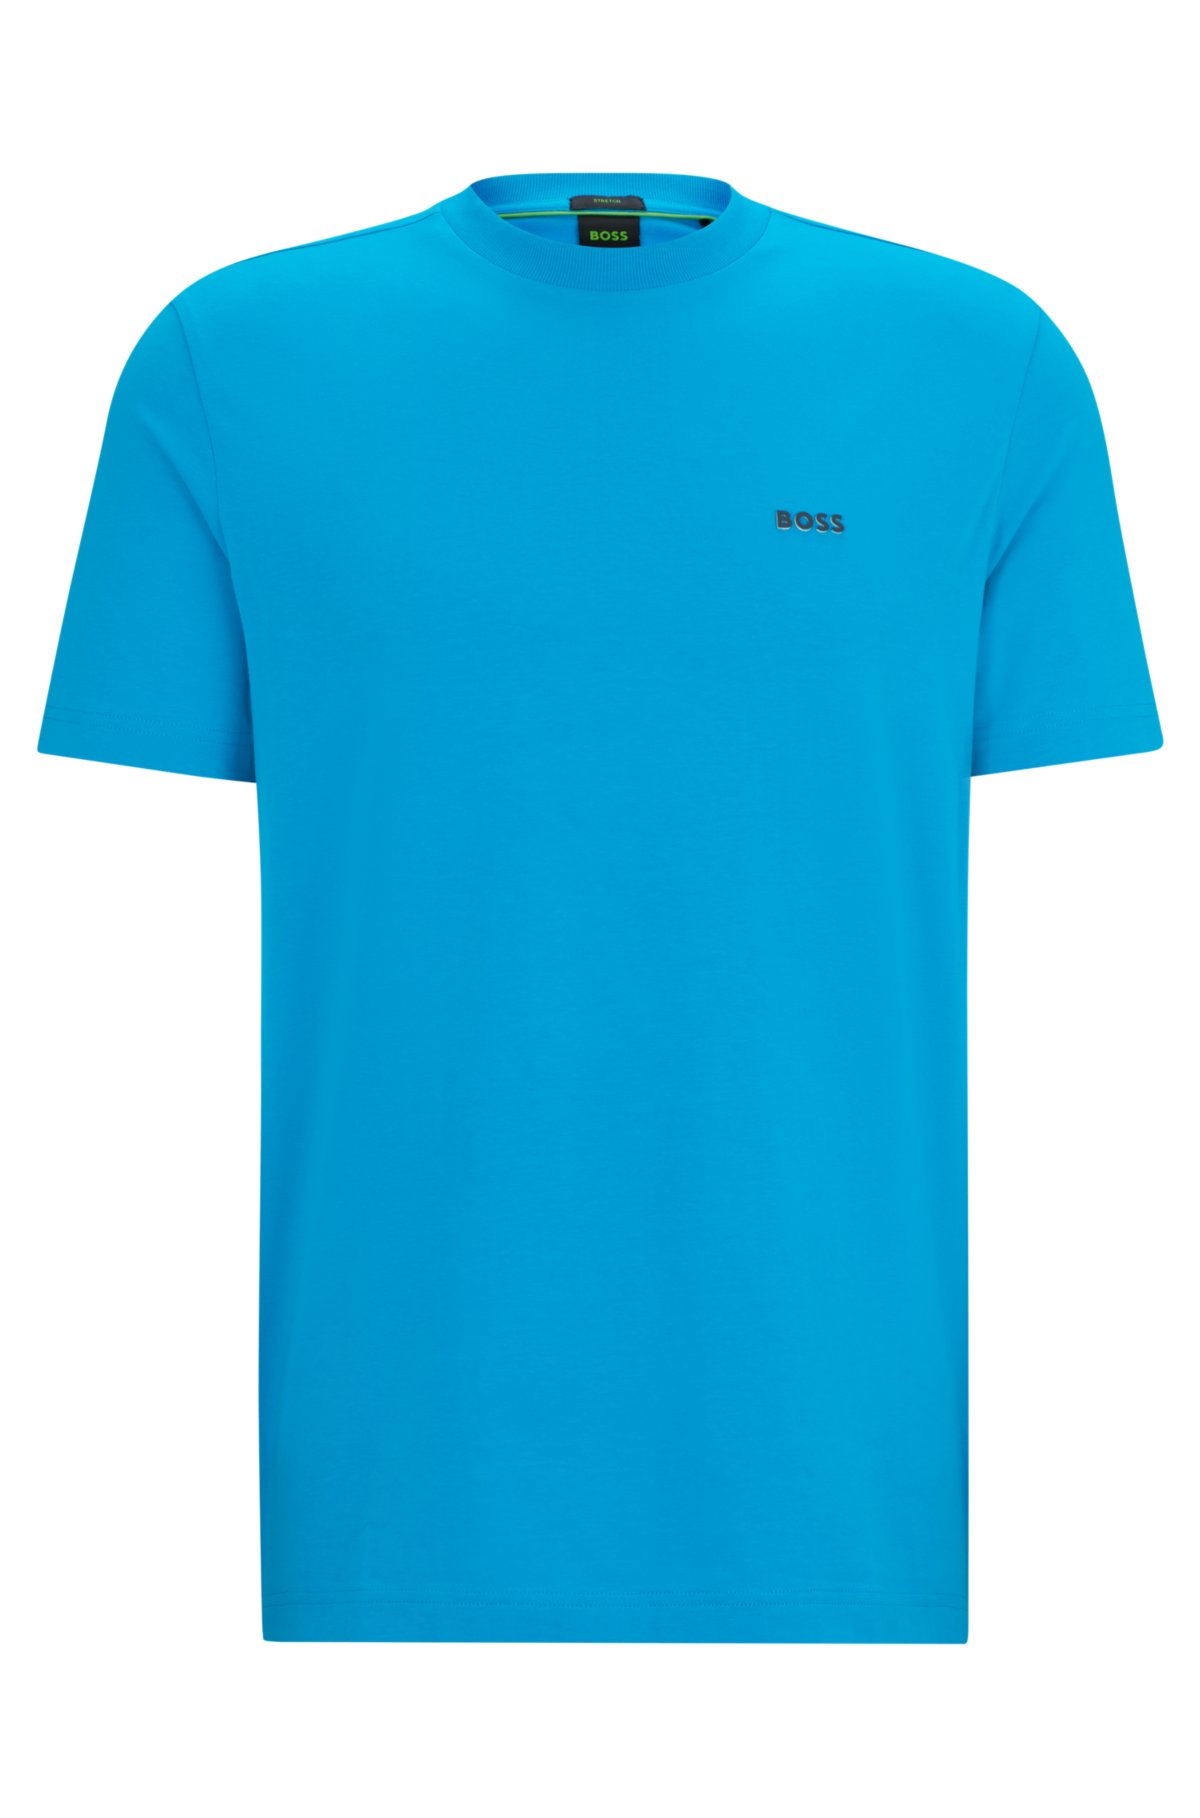 BOSS - ストレッチコットン レギュラーフィットTシャツ コントラストロゴ